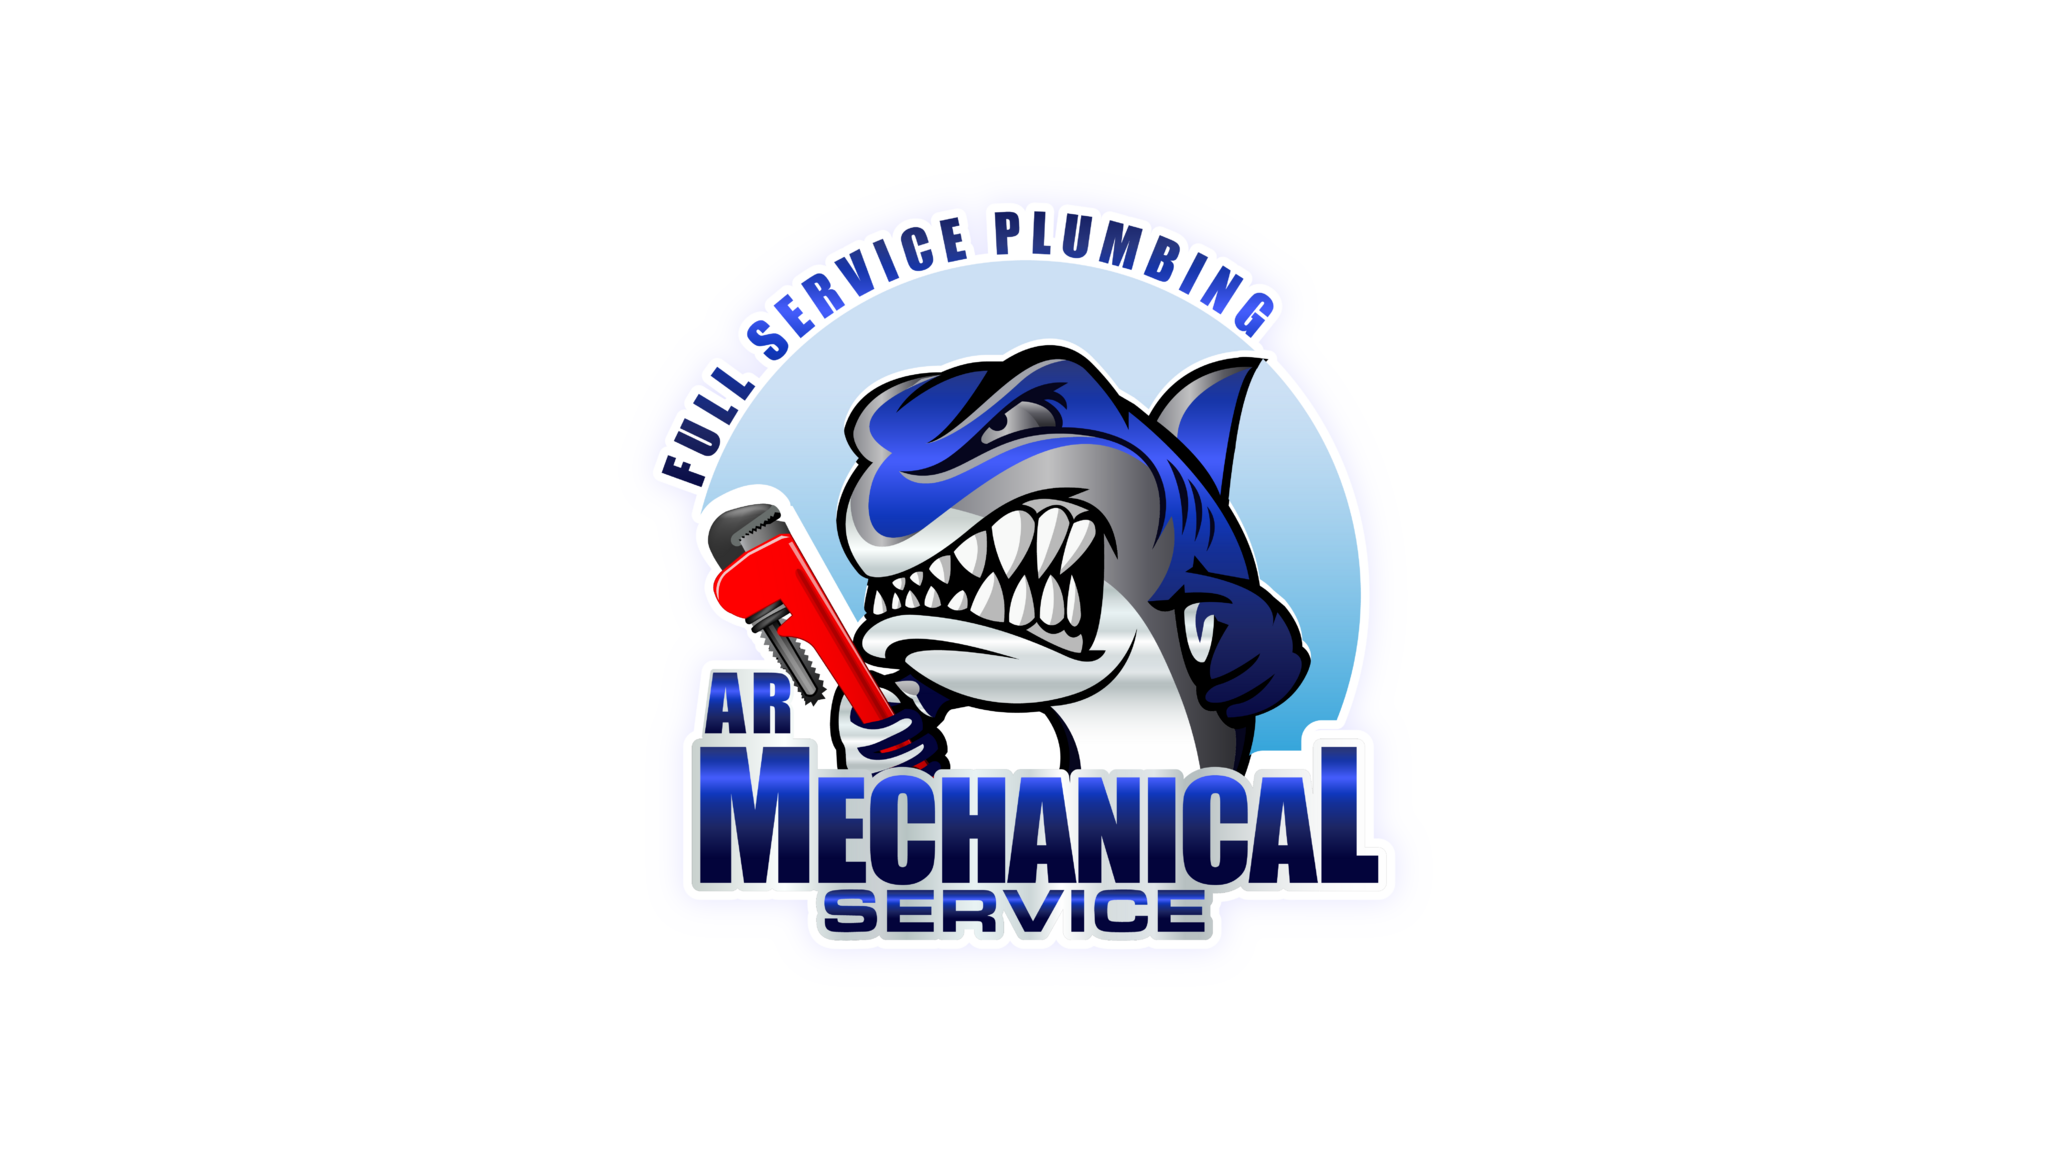 HP Plumbing & Mechanical